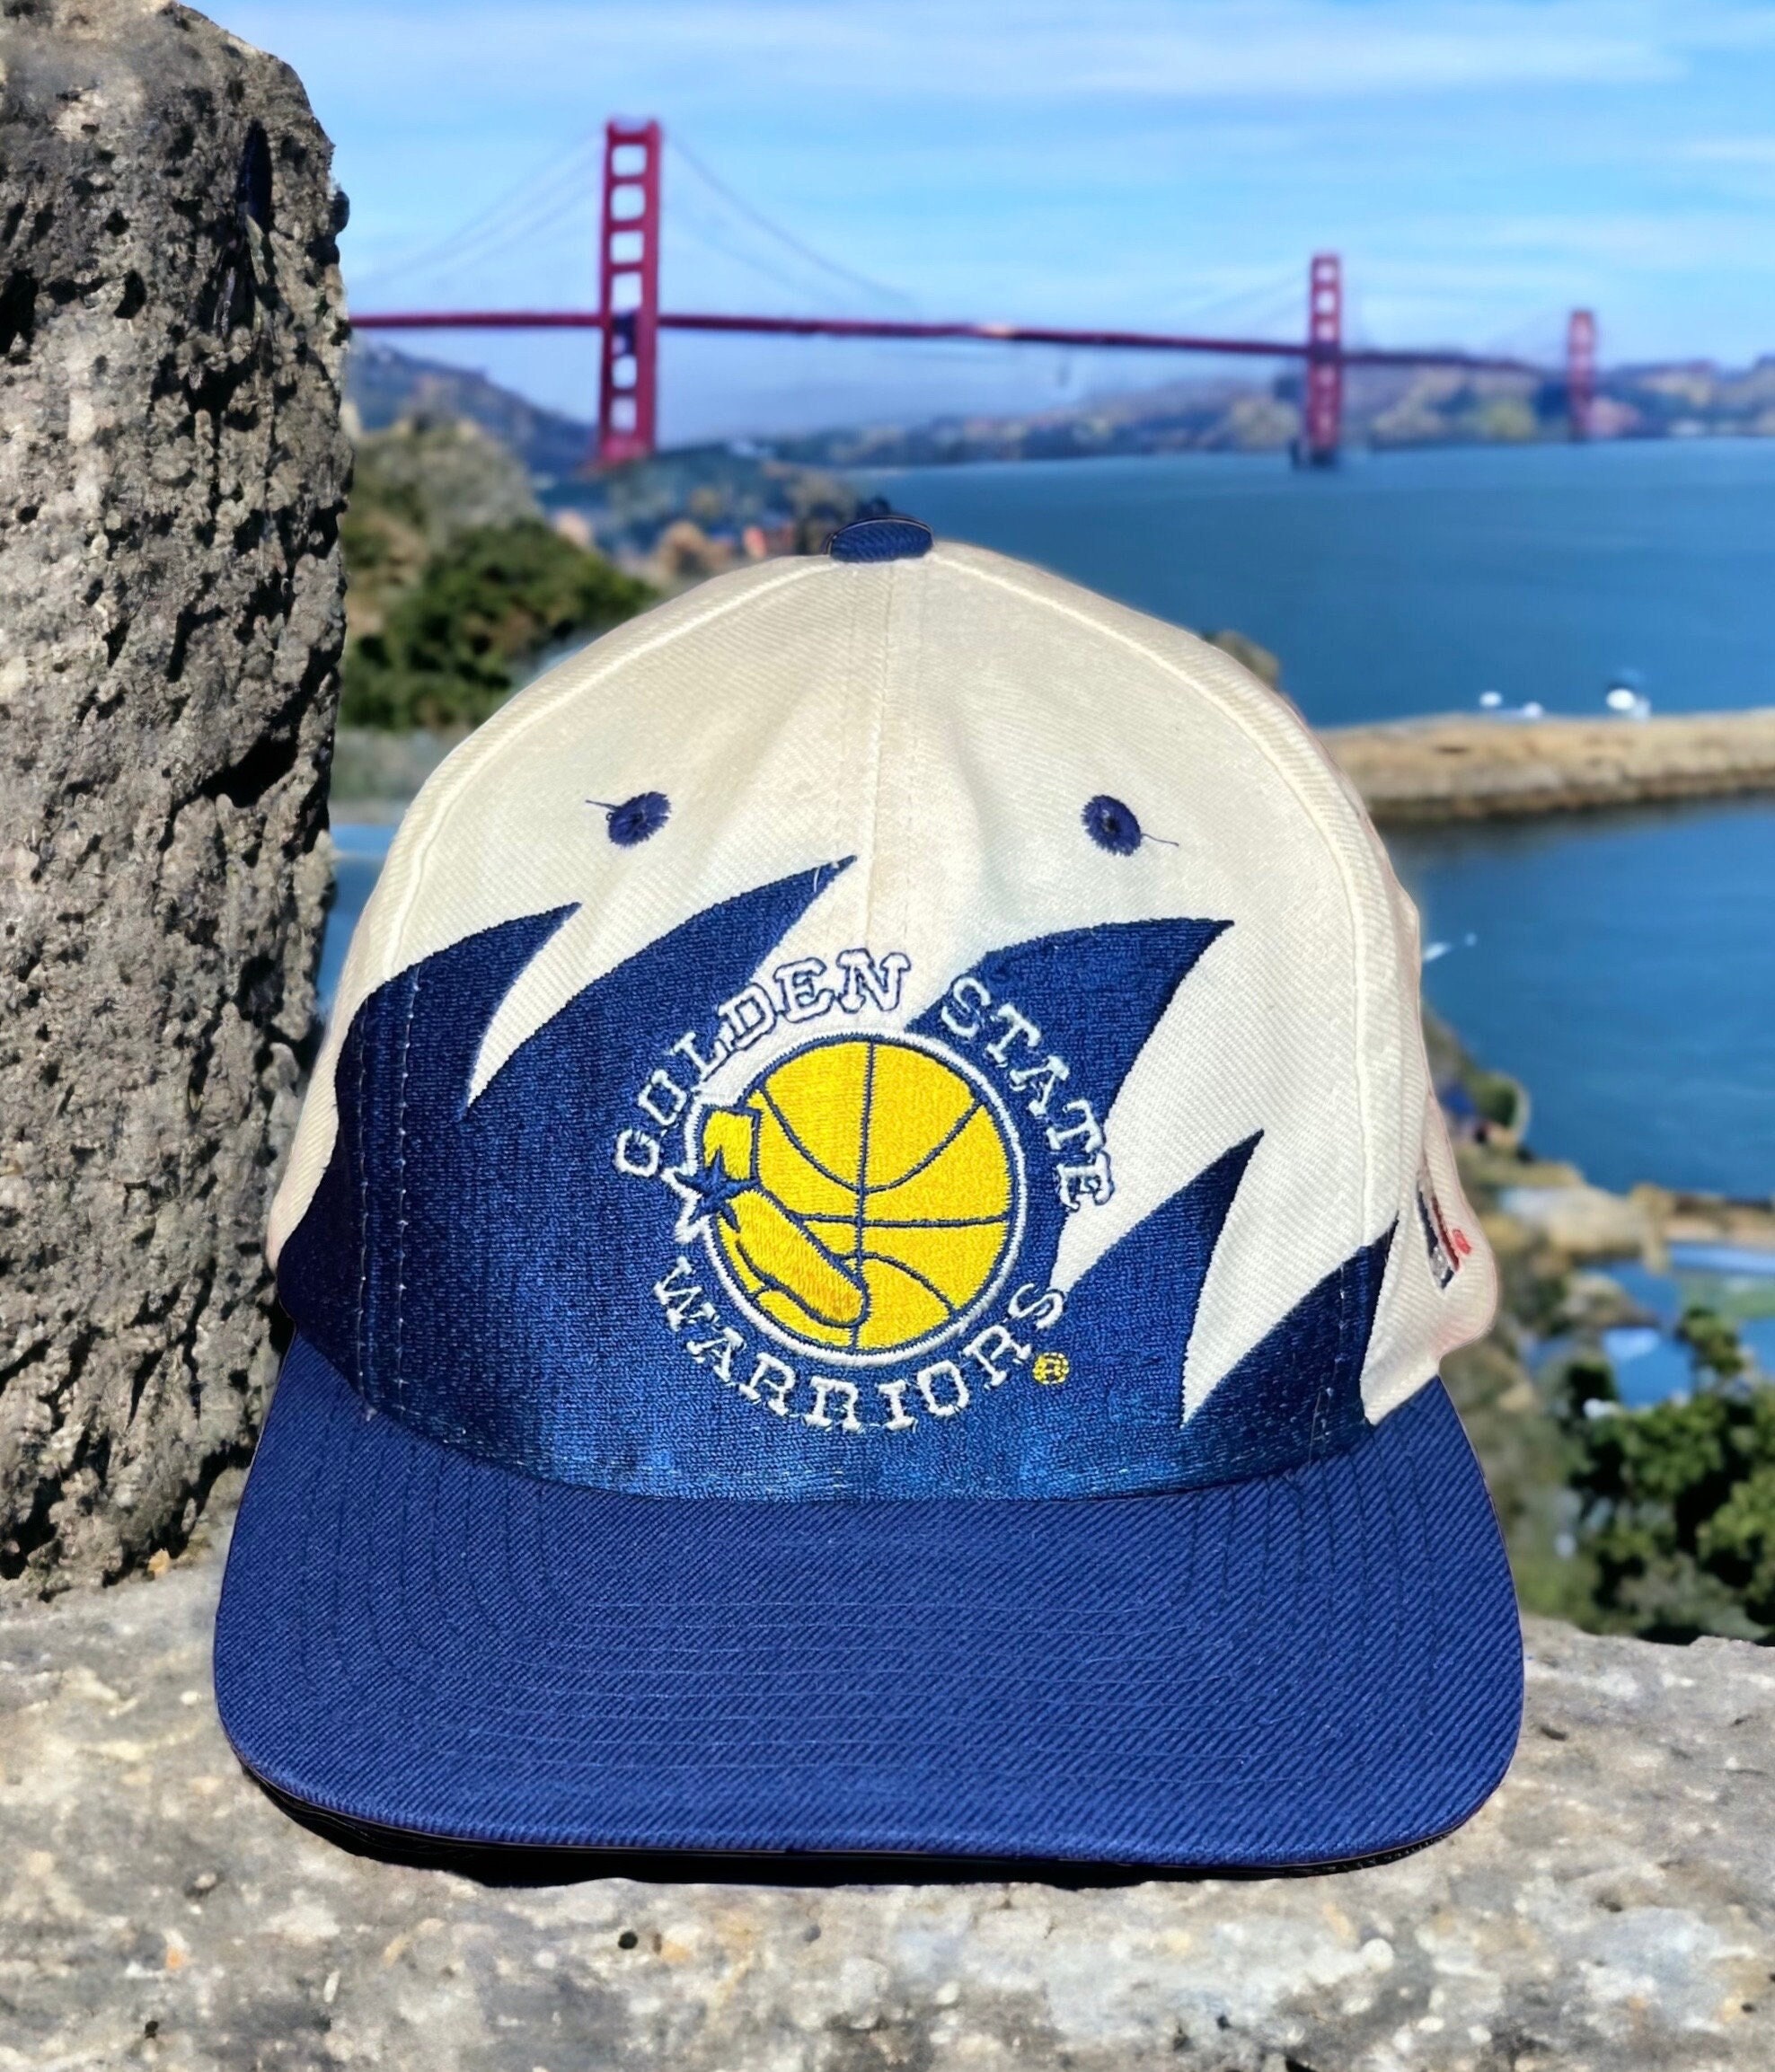 Golden State Warriors Hats, Snapback, Warriors Locker Room Caps